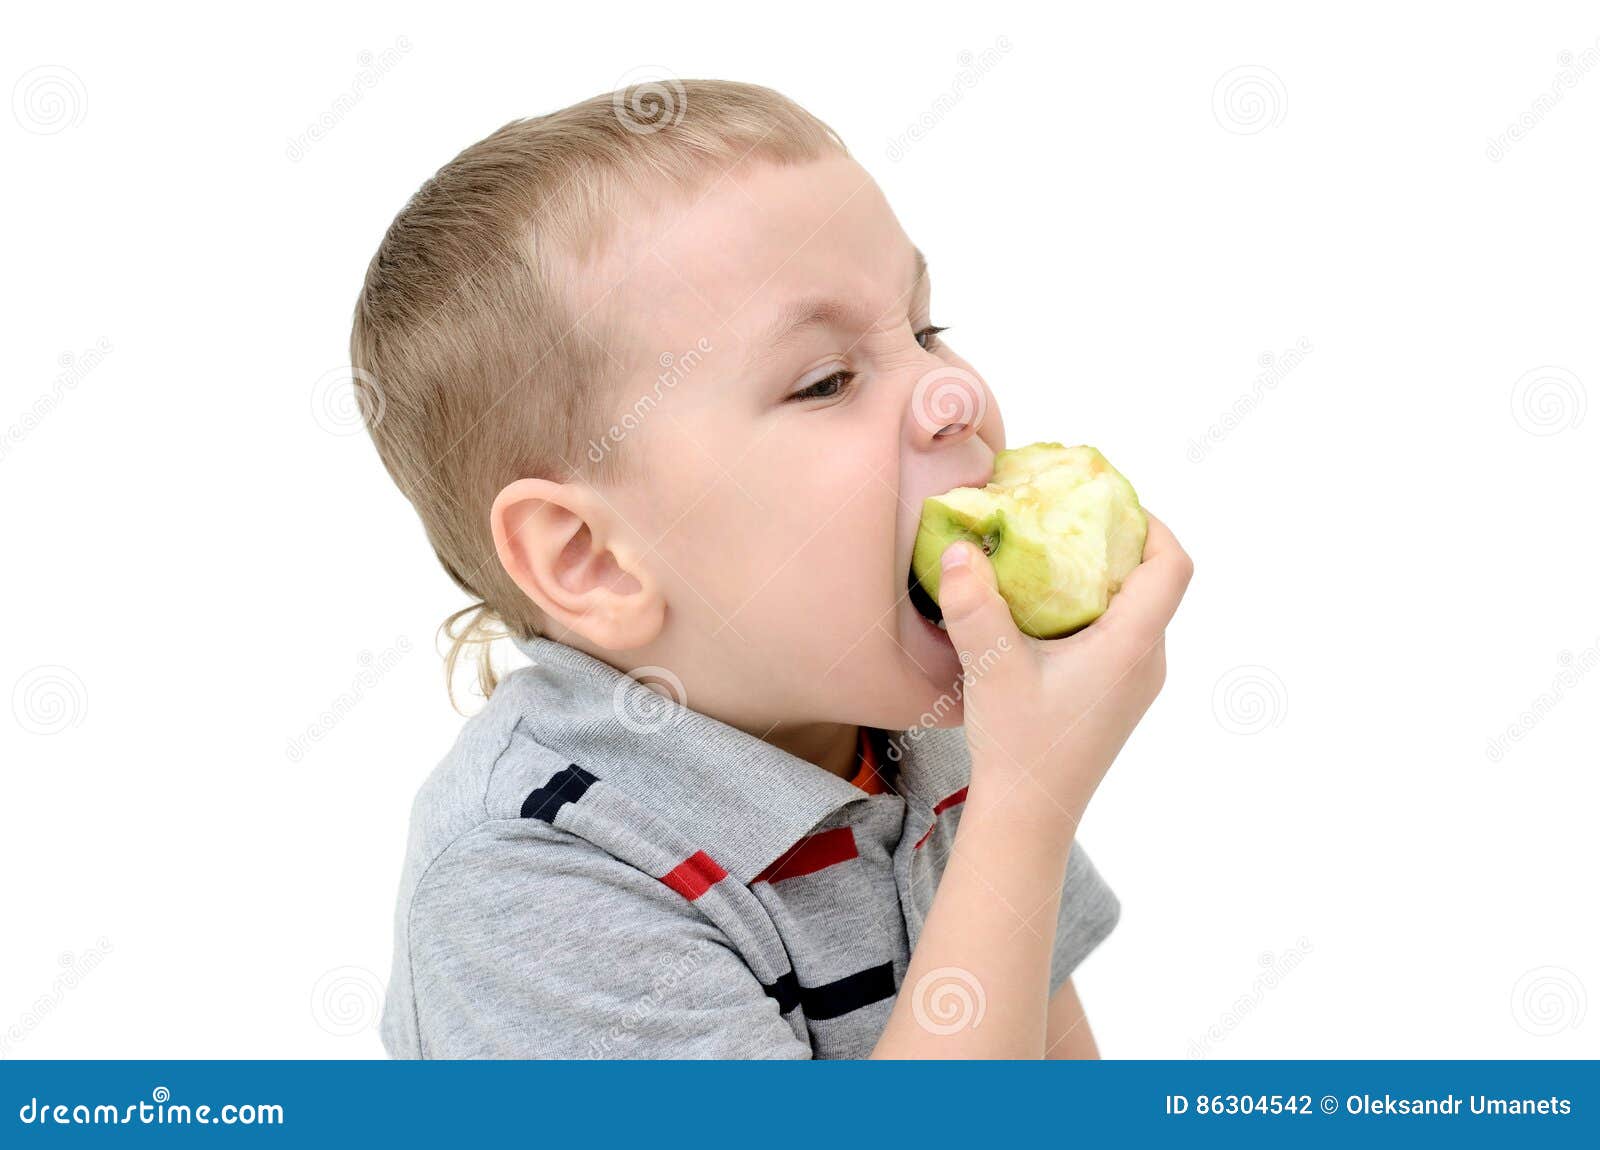 The apple am little. Мальчик ест яблоко. Ребенок ест яблоко. Мальчик надкусывает яблоко. Человек поедающий яблоко.